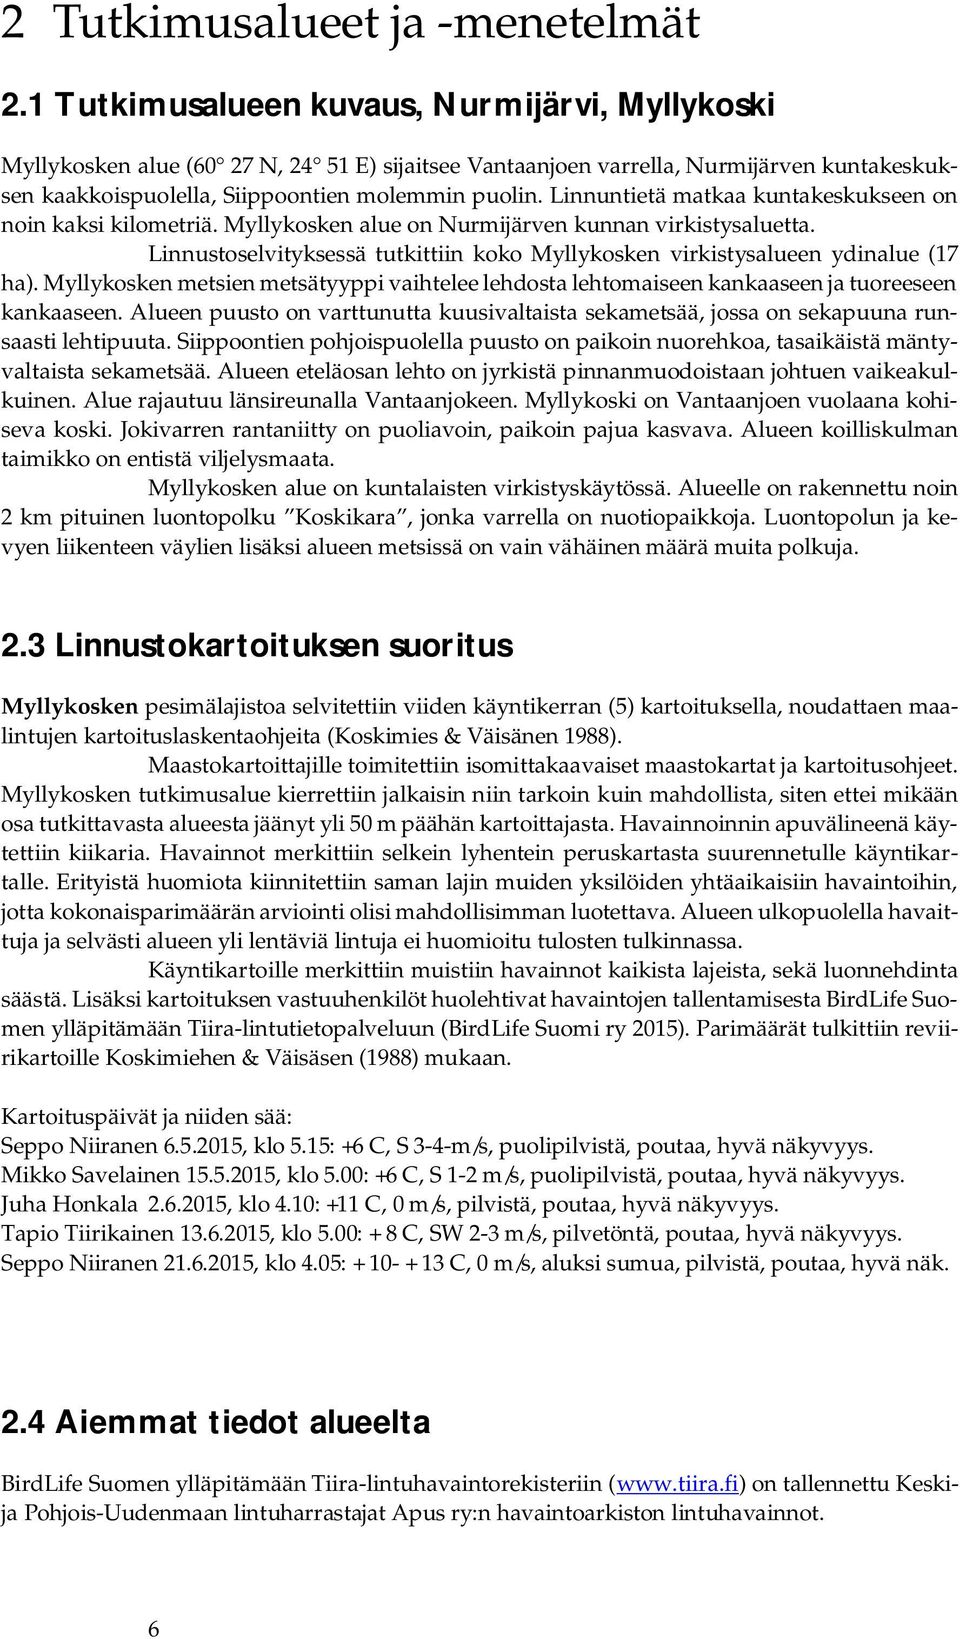 Linnuntietä matkaa kuntakeskukseen on noin kaksi kilometriä. Myllykosken alue on Nurmijärven kunnan virkistysaluetta.